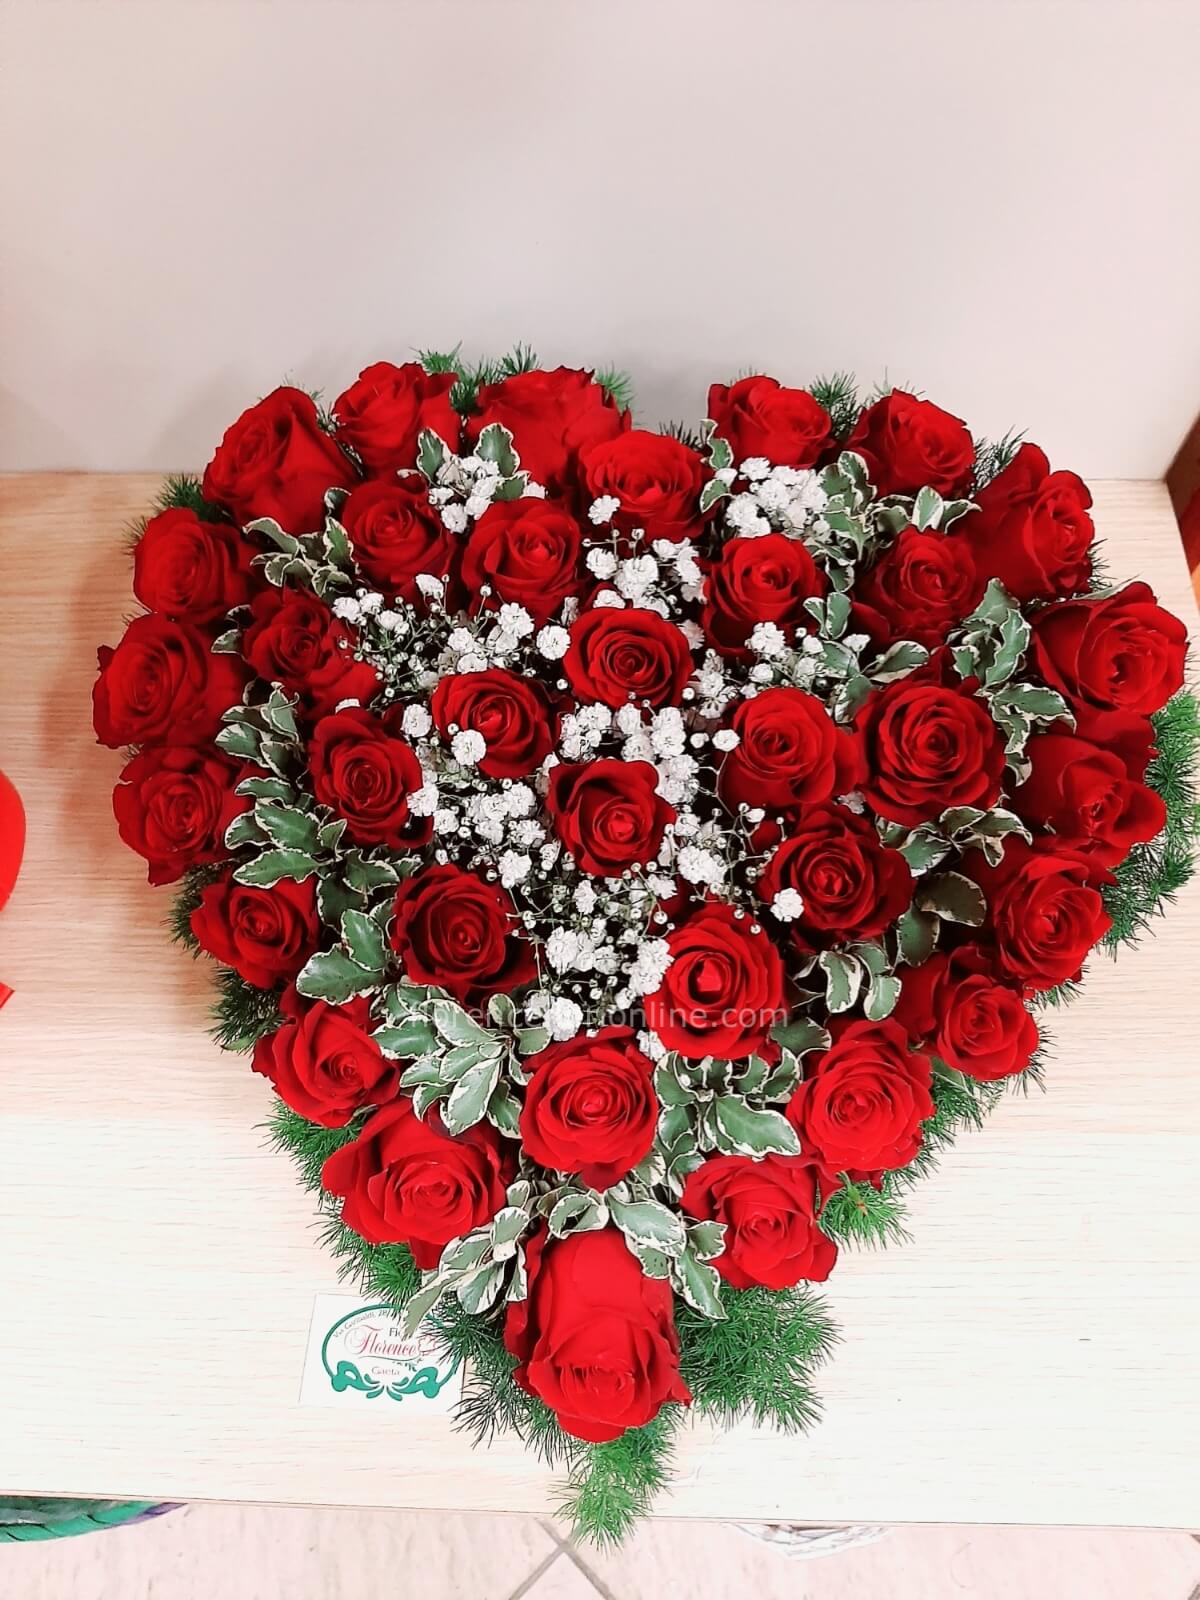 Cuore di rose rosse » Fiorista consegna fiori e piante a domicilio a Gaeta.  Acquisto e invio online di fiori a Gaeta e Formia.